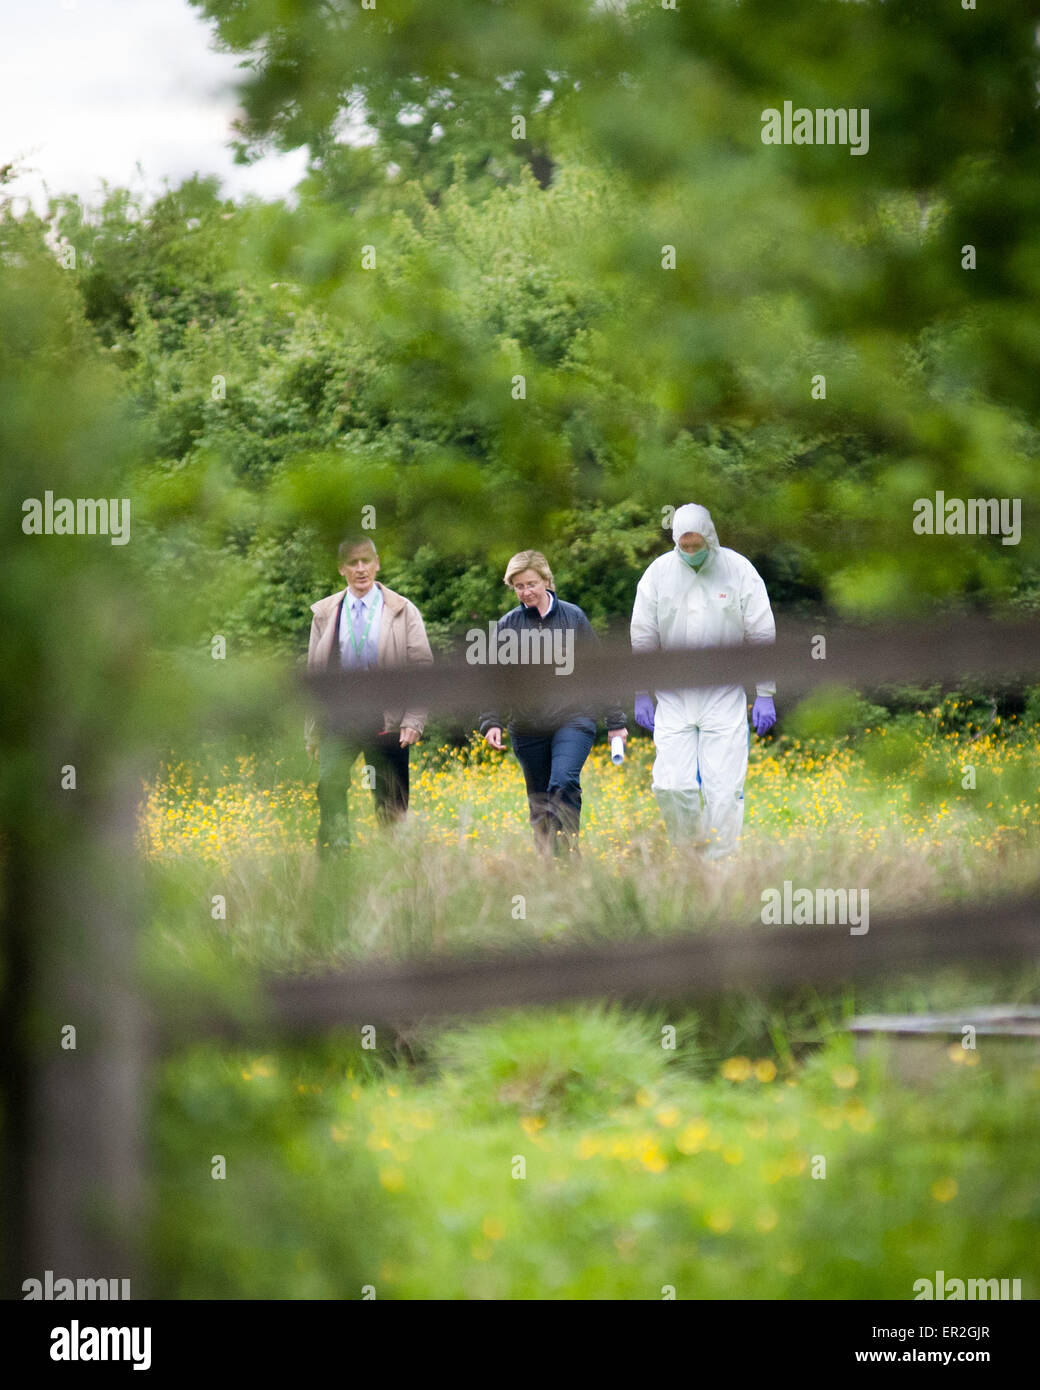 Forensics ufficiali e forze di polizia in una scena del crimine Oxford Regno Unito 2015 Foto Stock